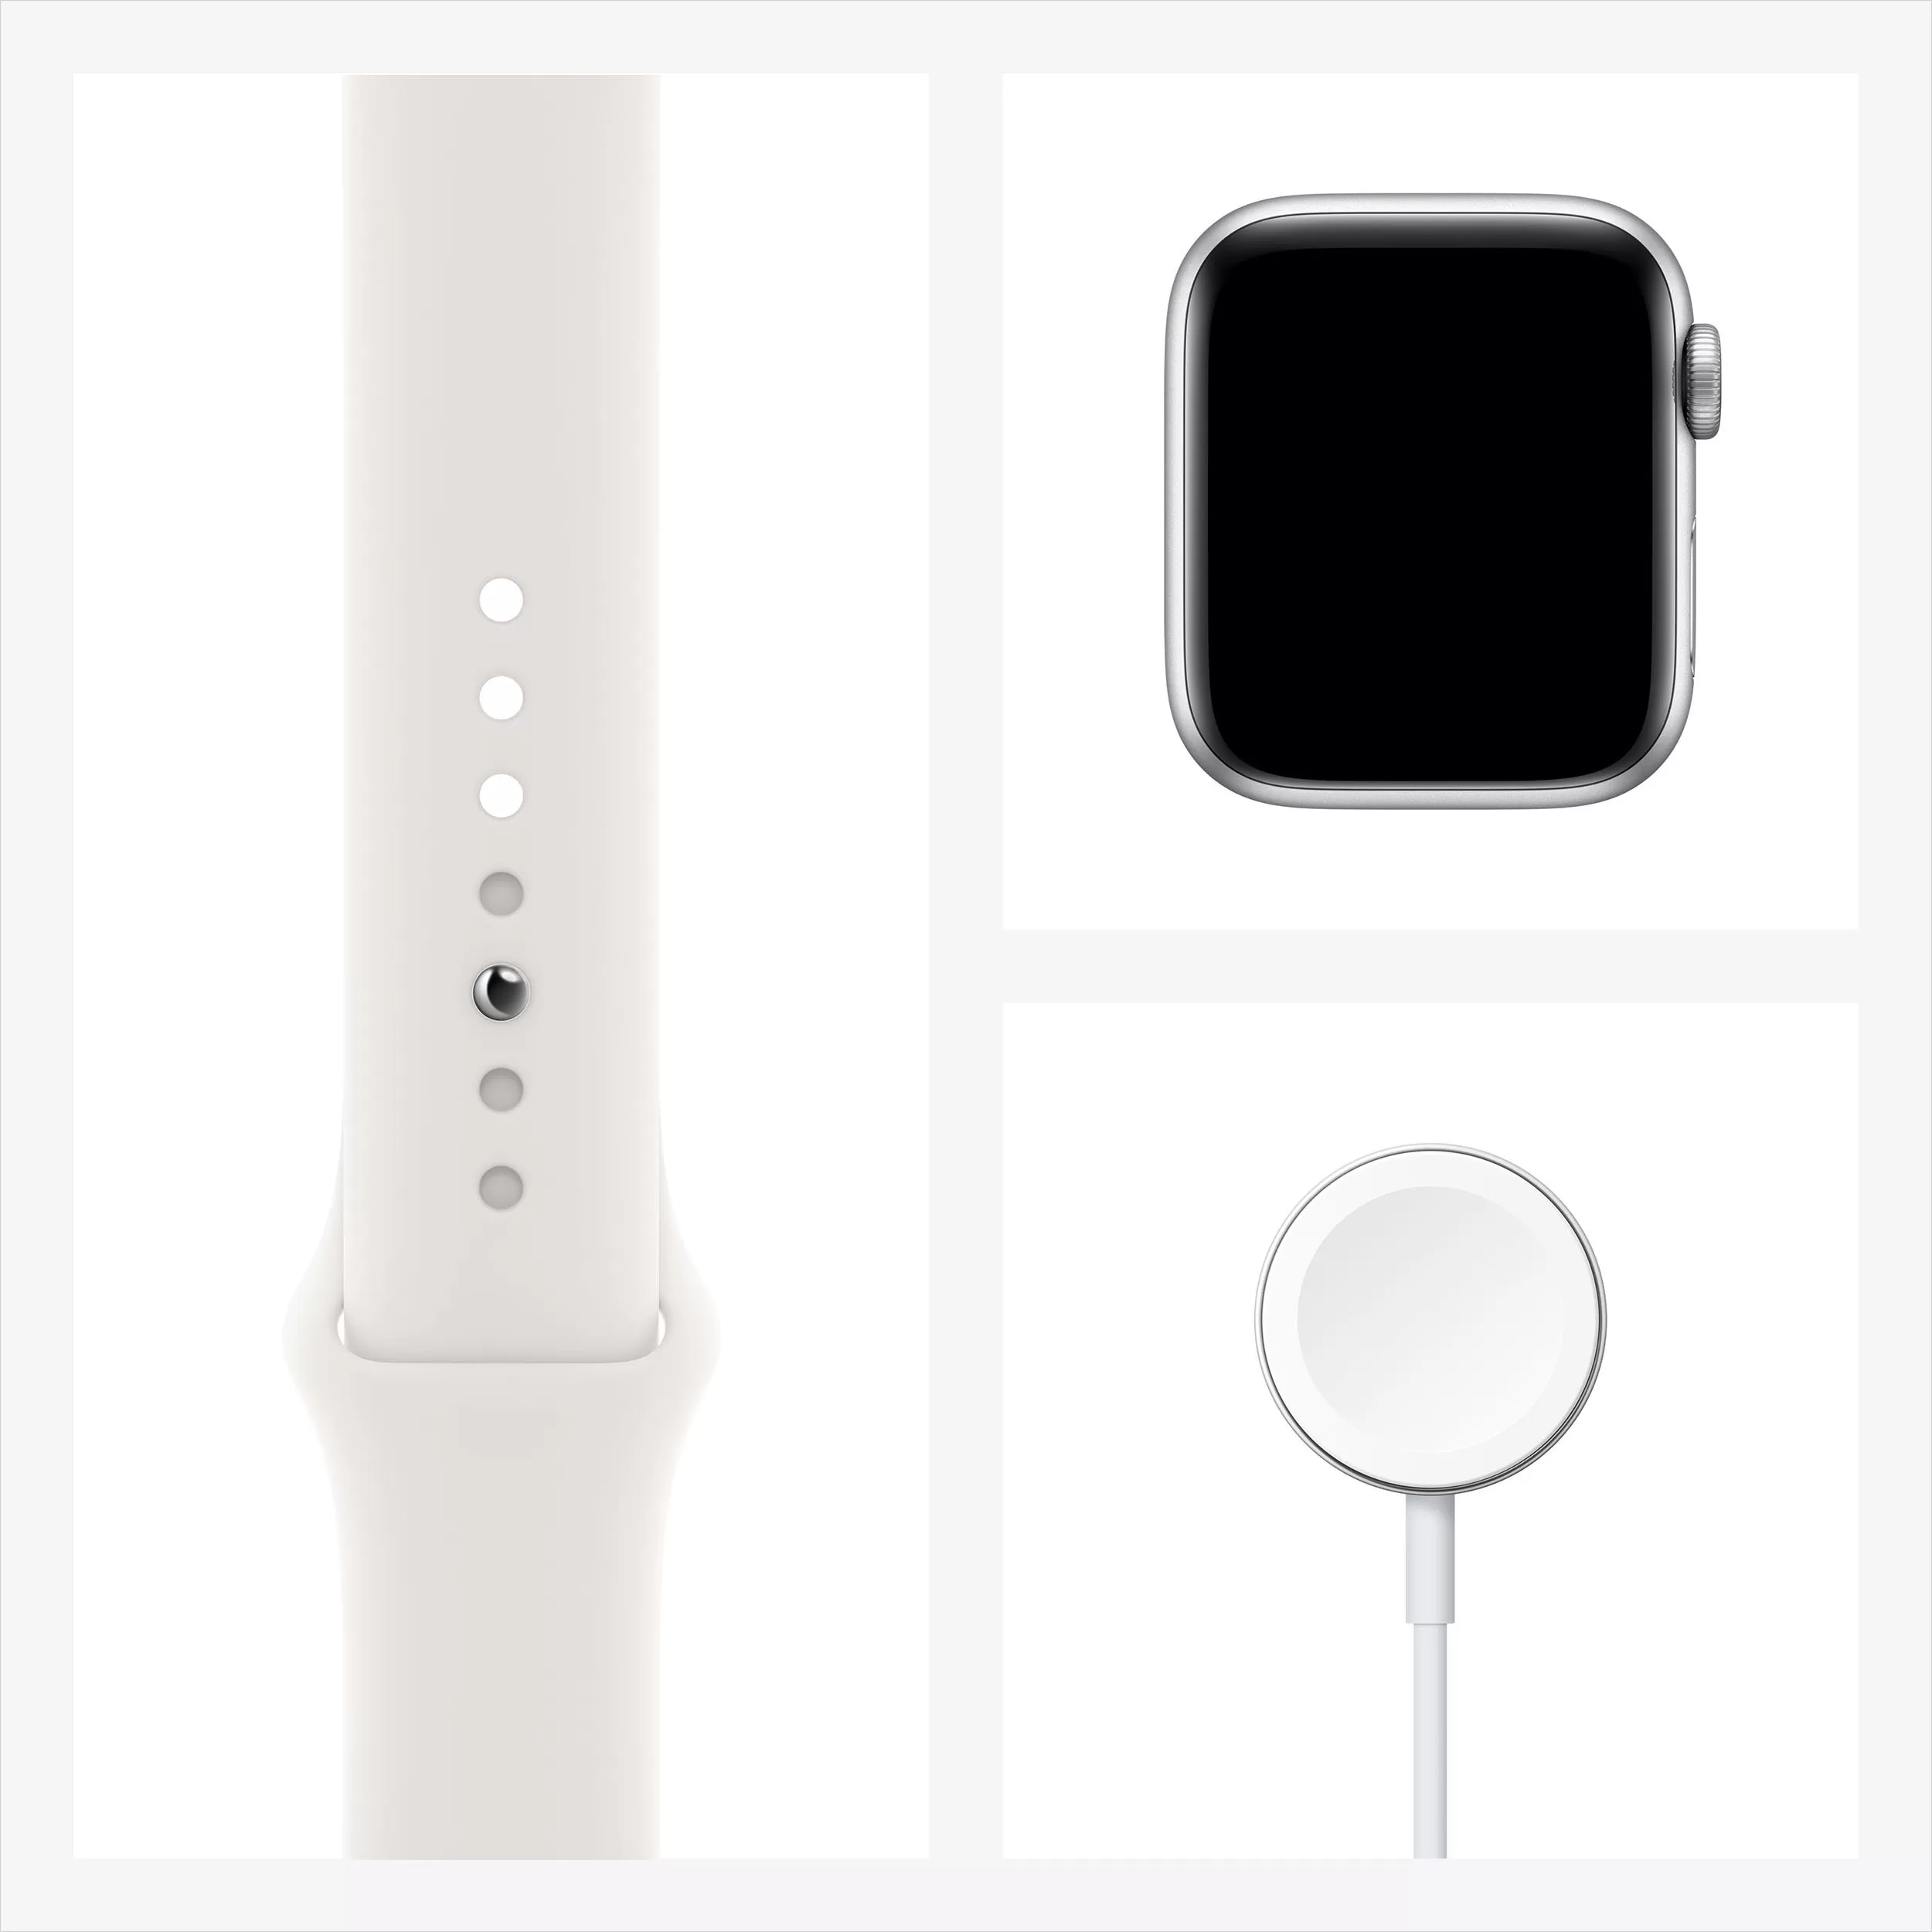 Apple Watch Series 6, 44 мм, корпус из алюминия серебристого цвета, спортивный ремешок белого цвета